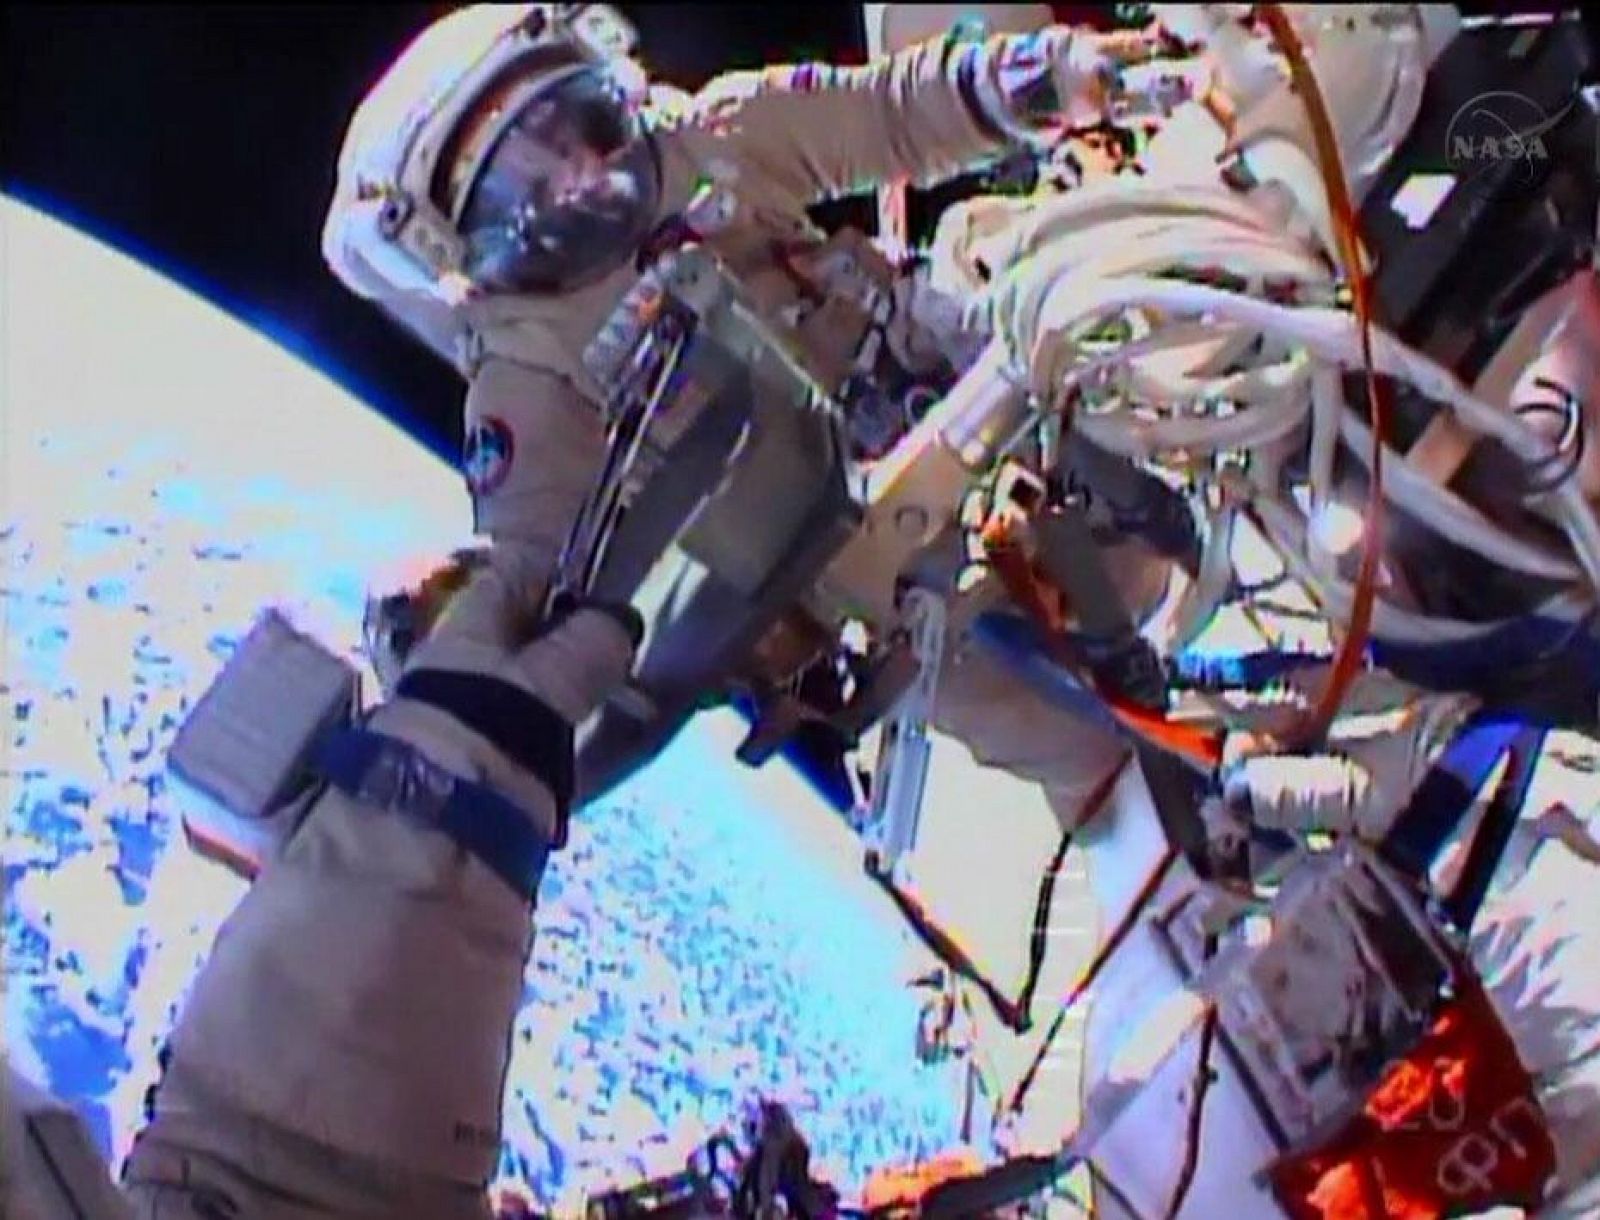 El astronauta Sergey Ryazanskiy captado por la cámara de Oleg Kotov durante la instalación de las cámaras.